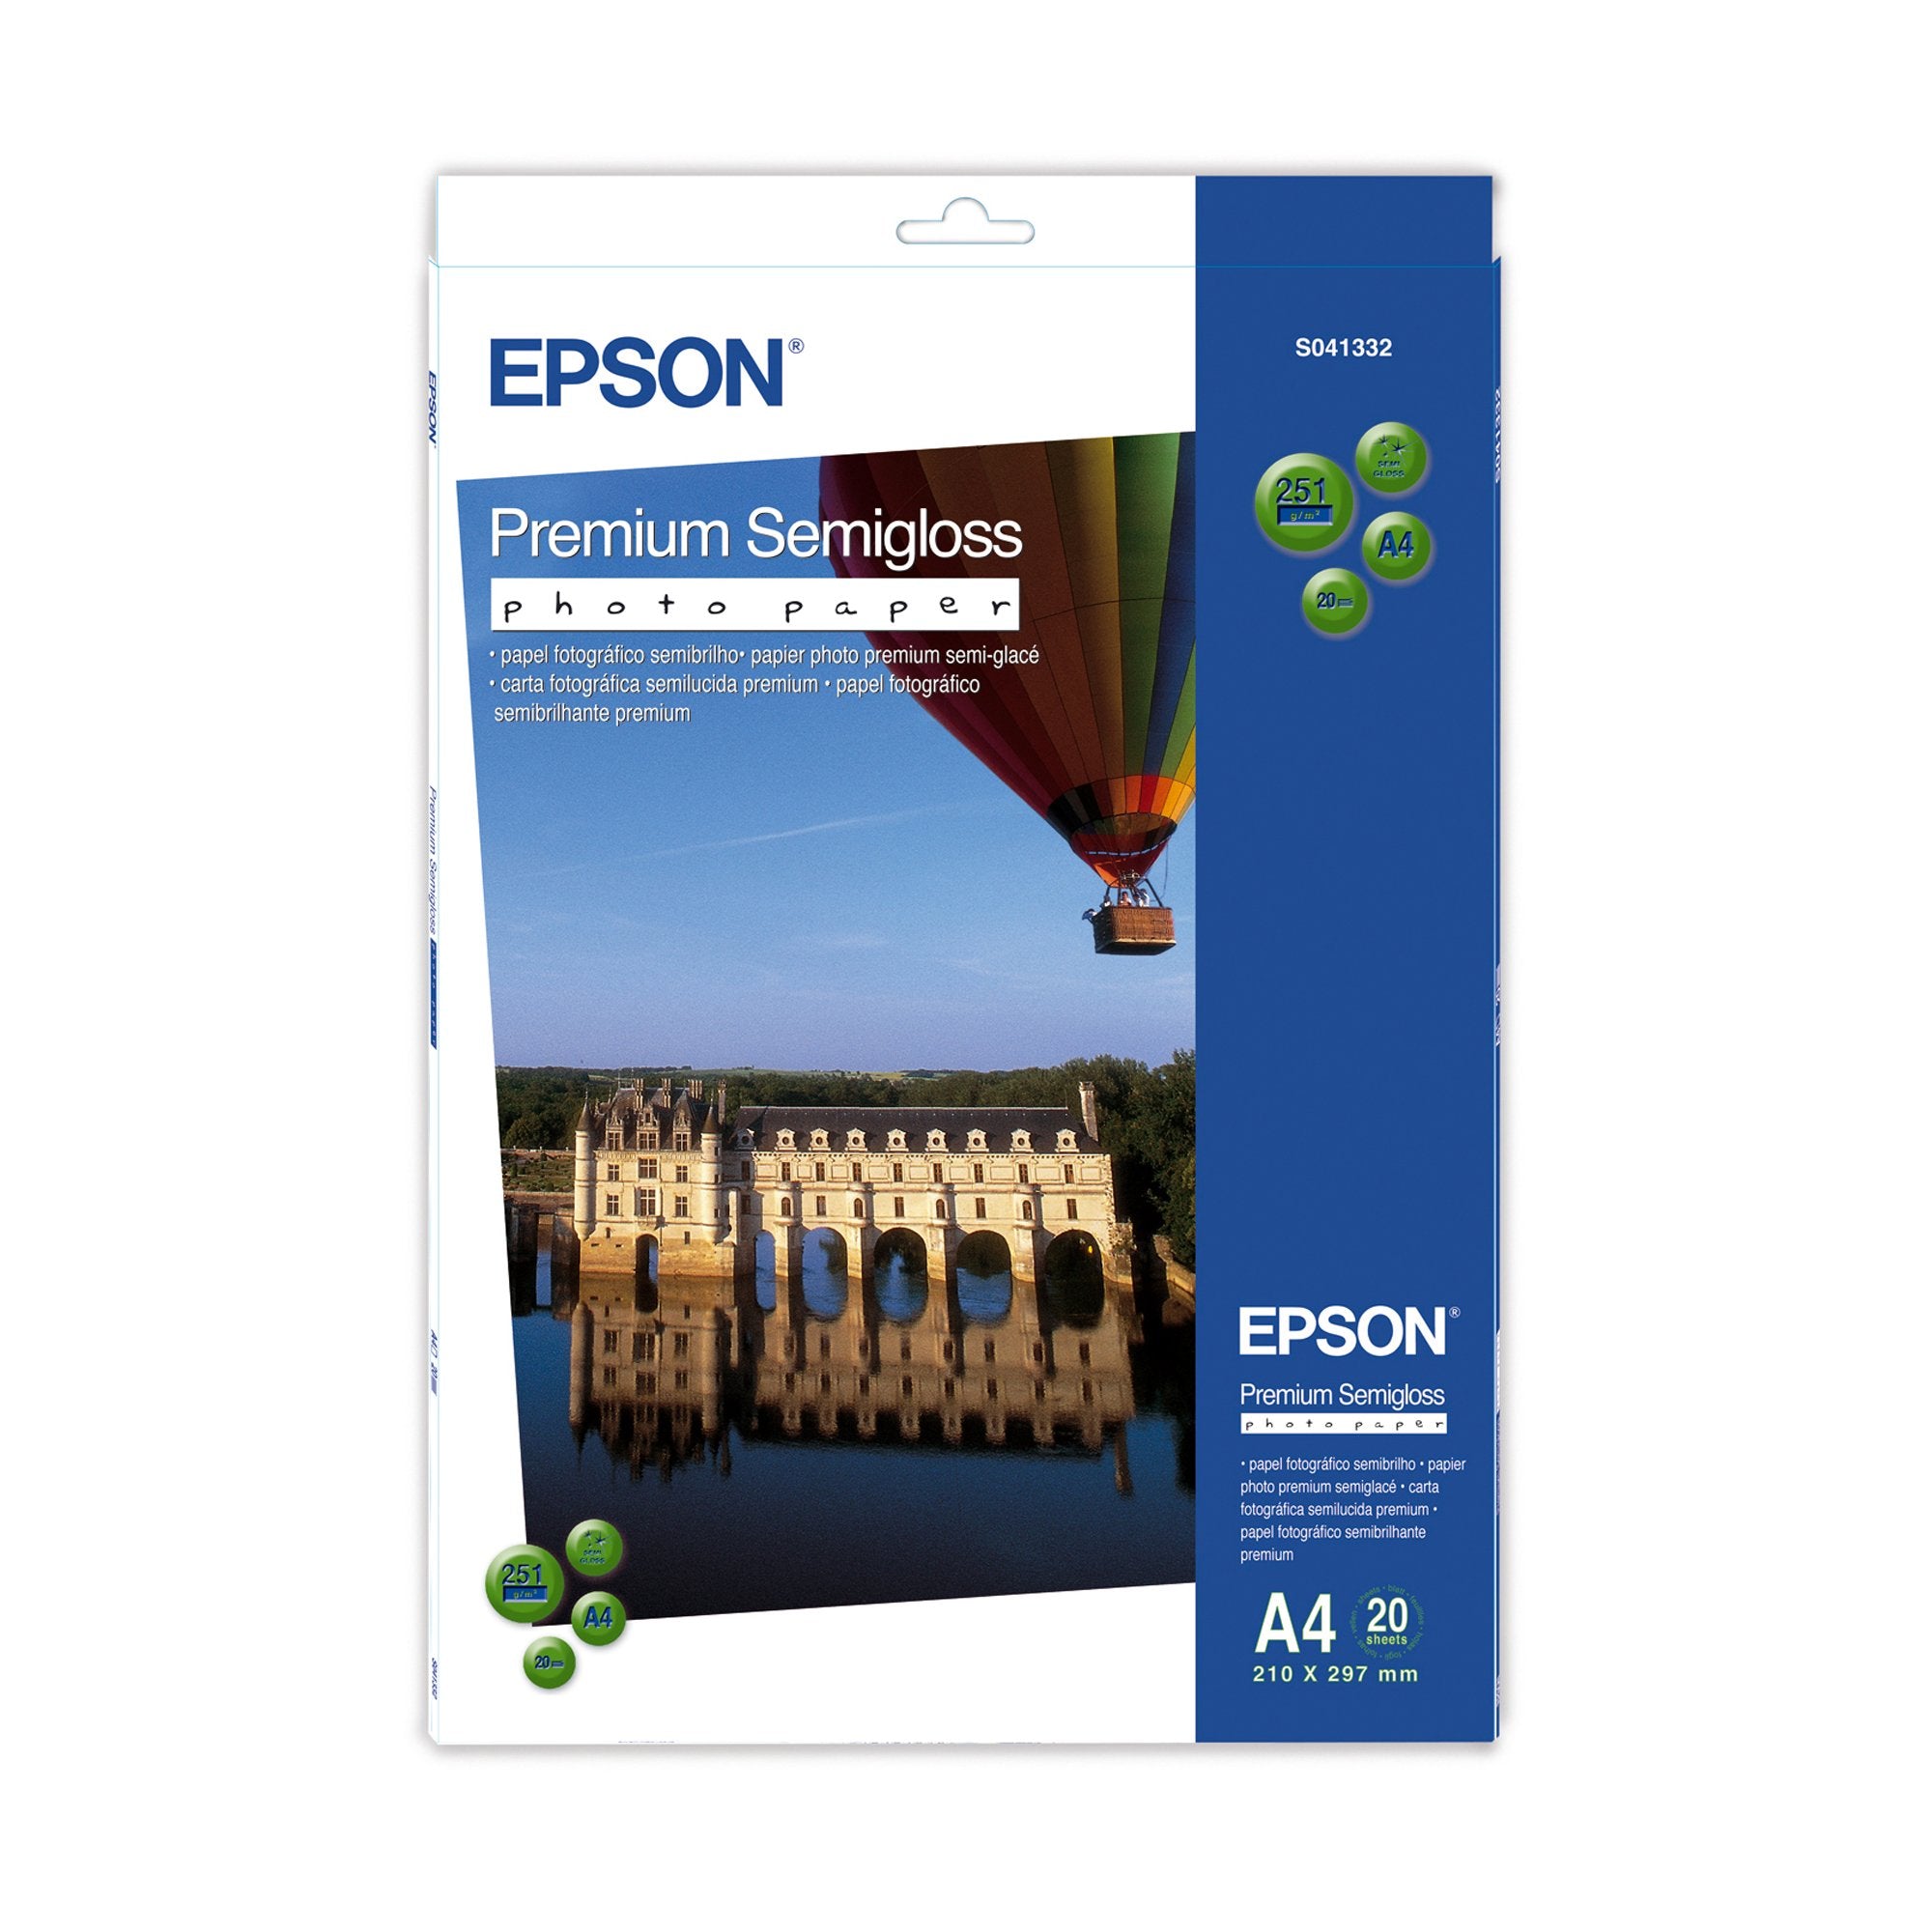 epson-carta-fotografica-semilucida-premium-20fg-251gr-210x297mm